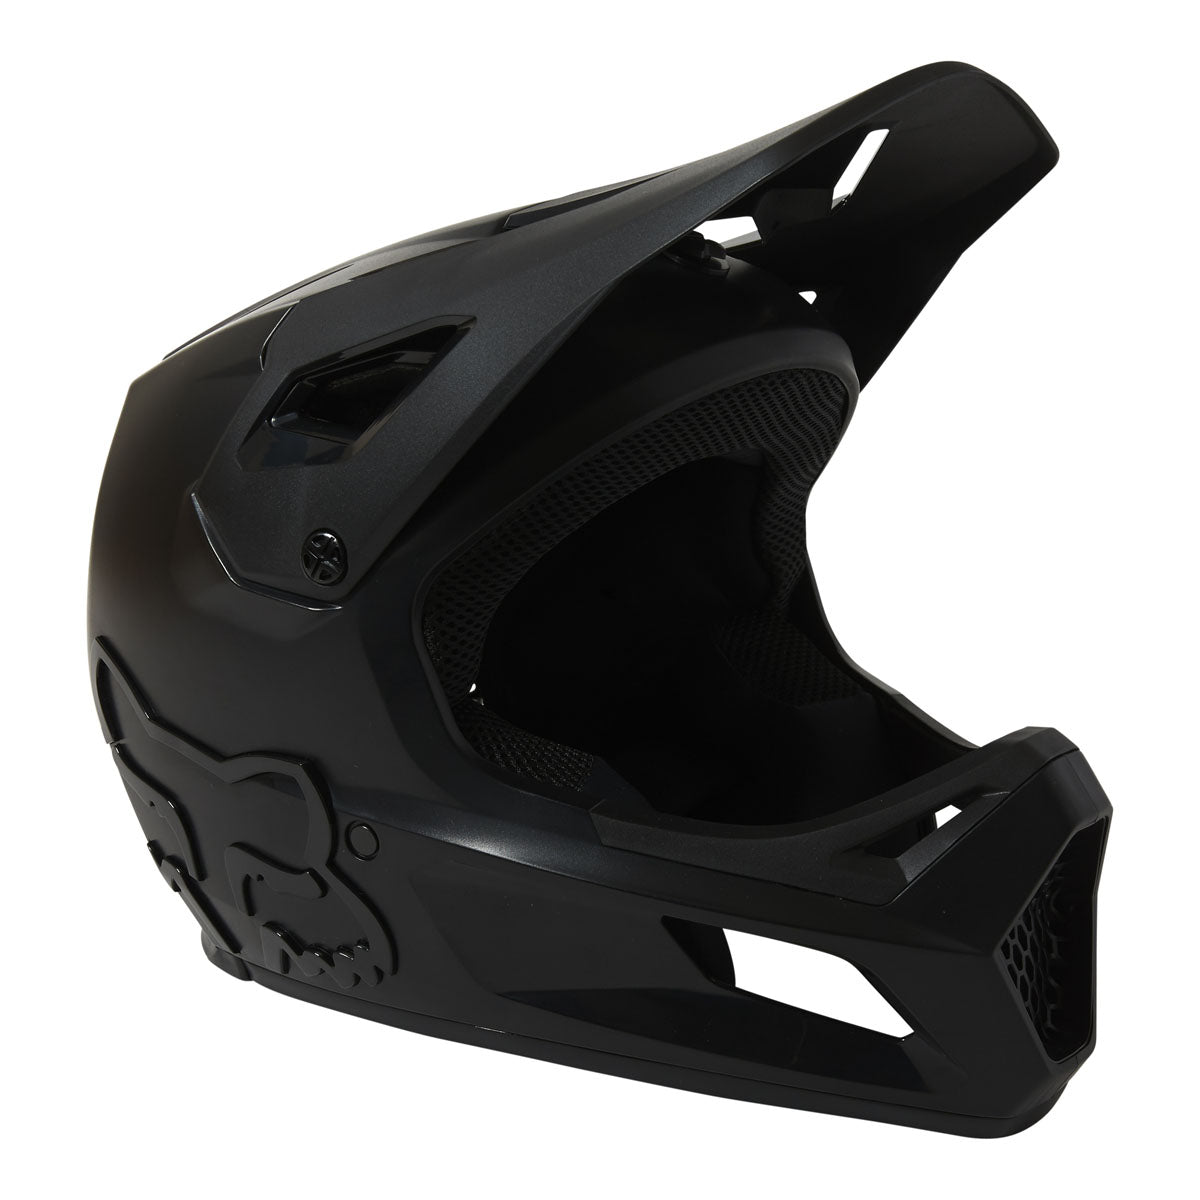 Fox Racing Youth Rampage Helmet - Black/Black